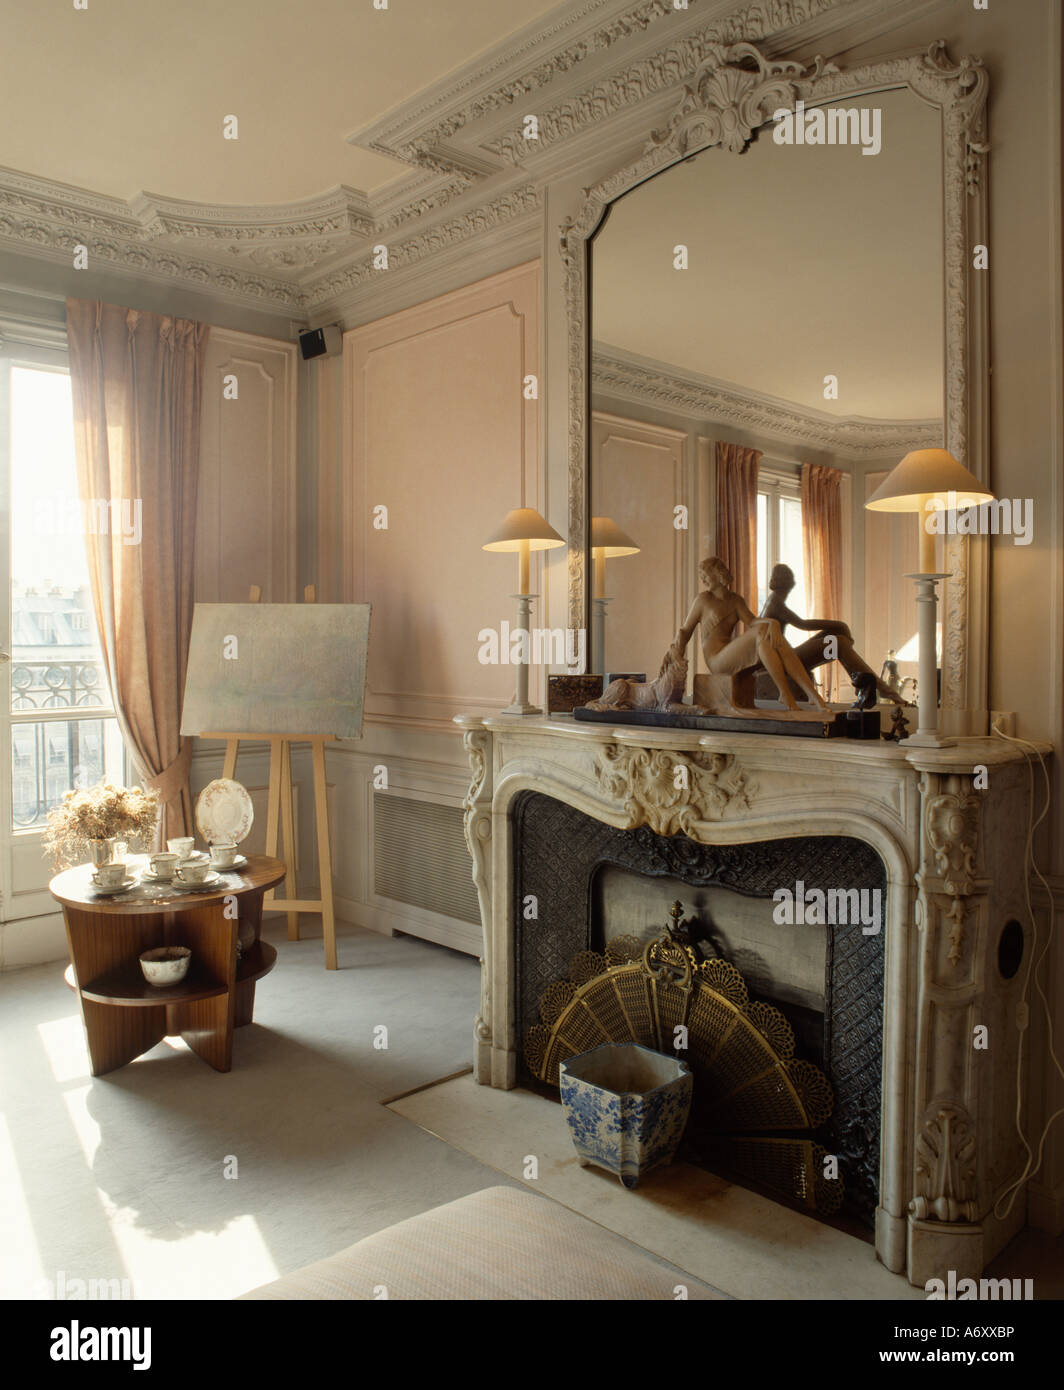 Grand miroir antique avec châssis peint en blanc sur la cheminée de marbre ornée en français sittingroom Banque D'Images